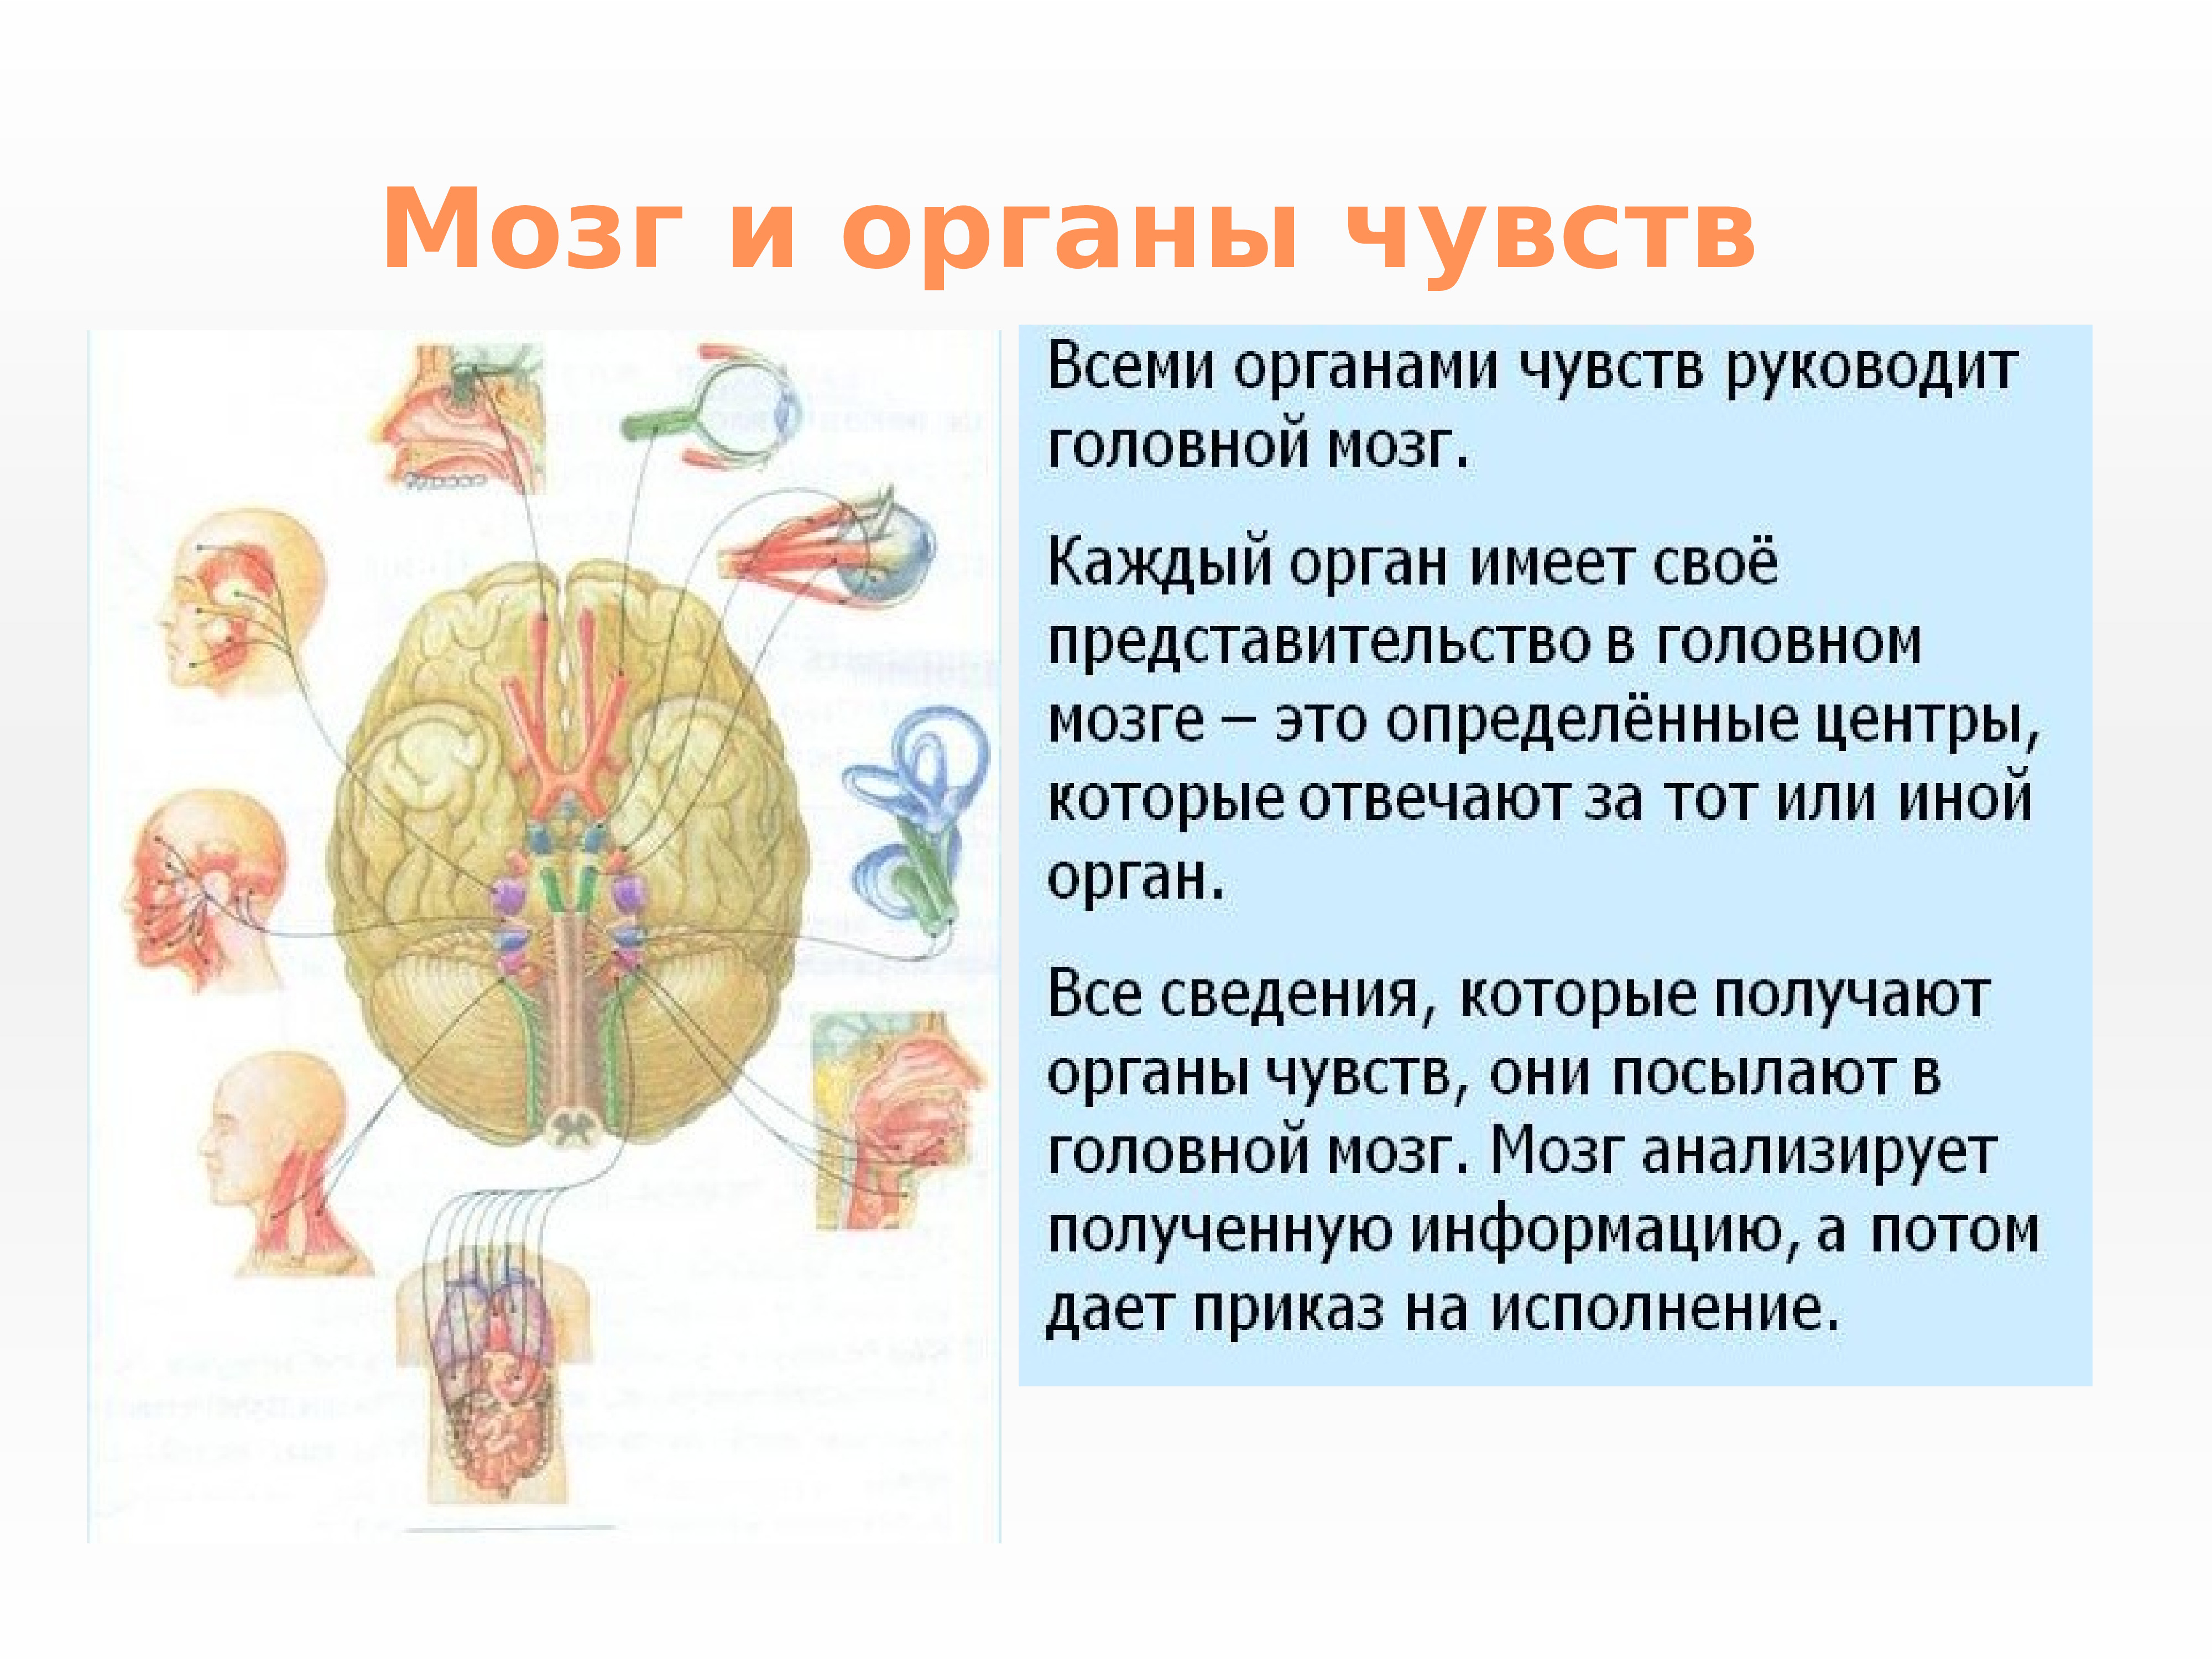 Органы чувств 8 класс биология презентация. Нервная система и органы чувств система человека. Нервная система структура организма. Строение и функции органов нервной системы. Нервная система и органы чувств строение функция.